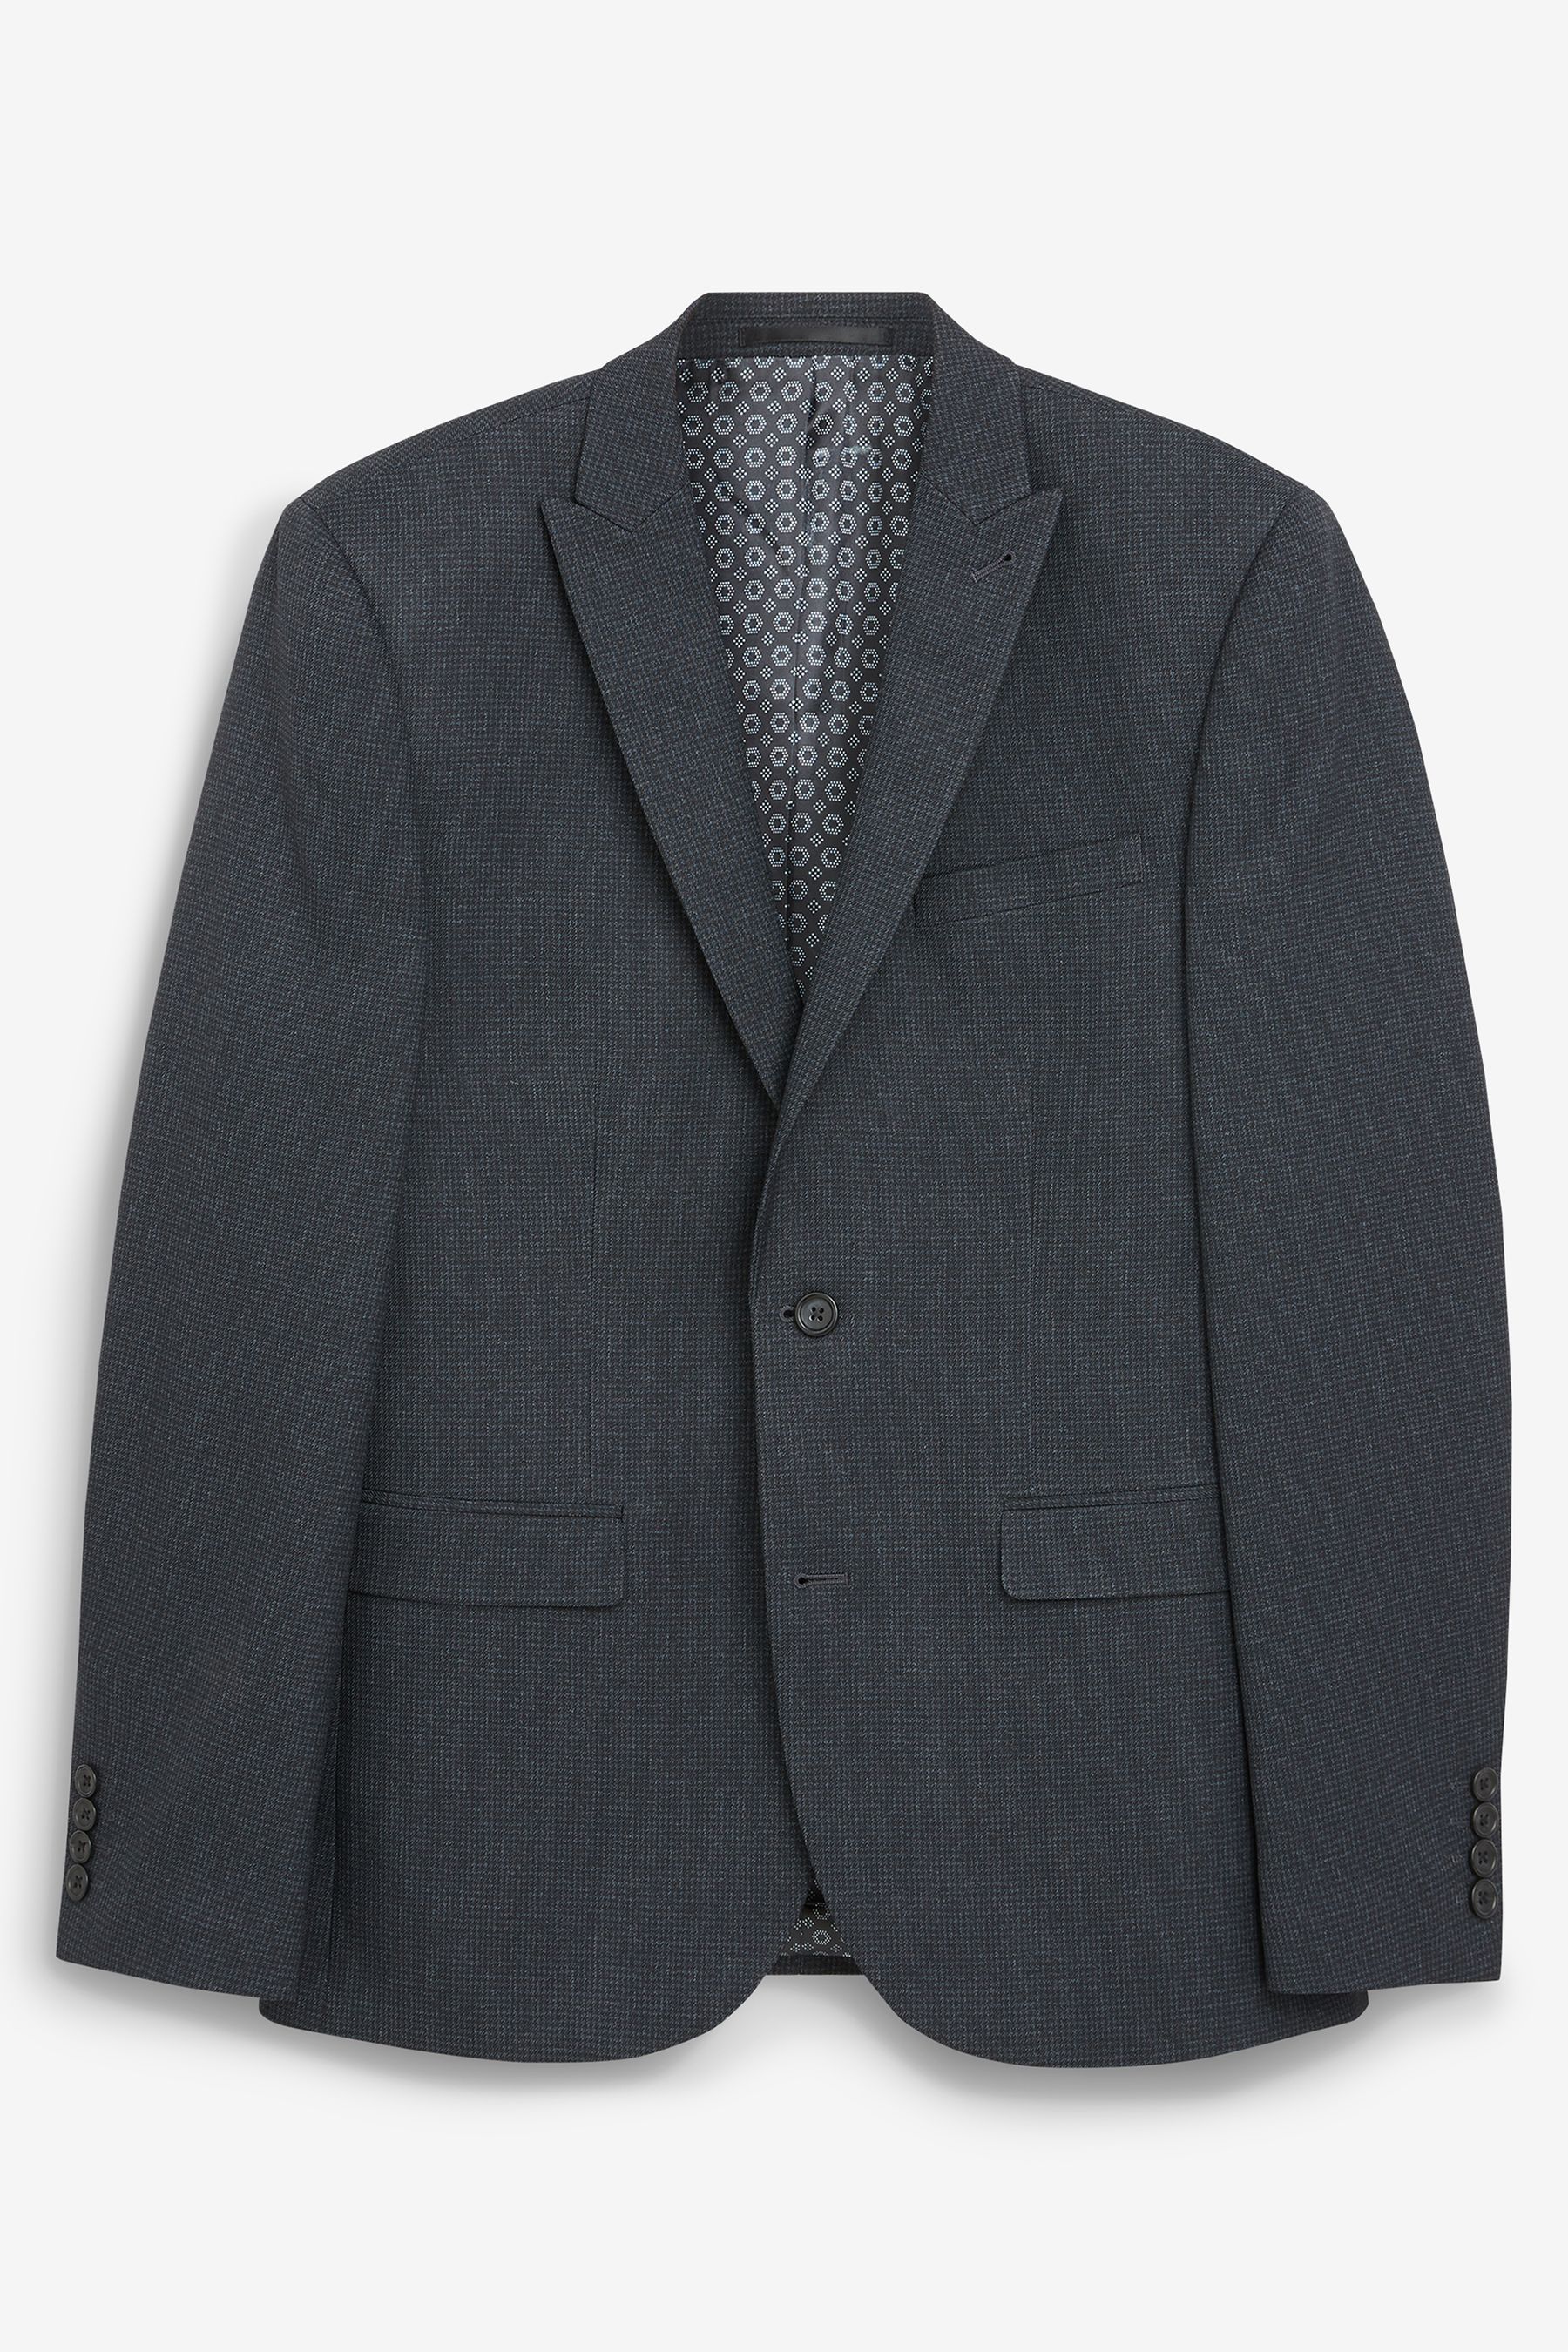 Traje de chaqueta tejido gris oscuro de un solo pecho con cuello en V para hombres de oficina de diseño personalizado